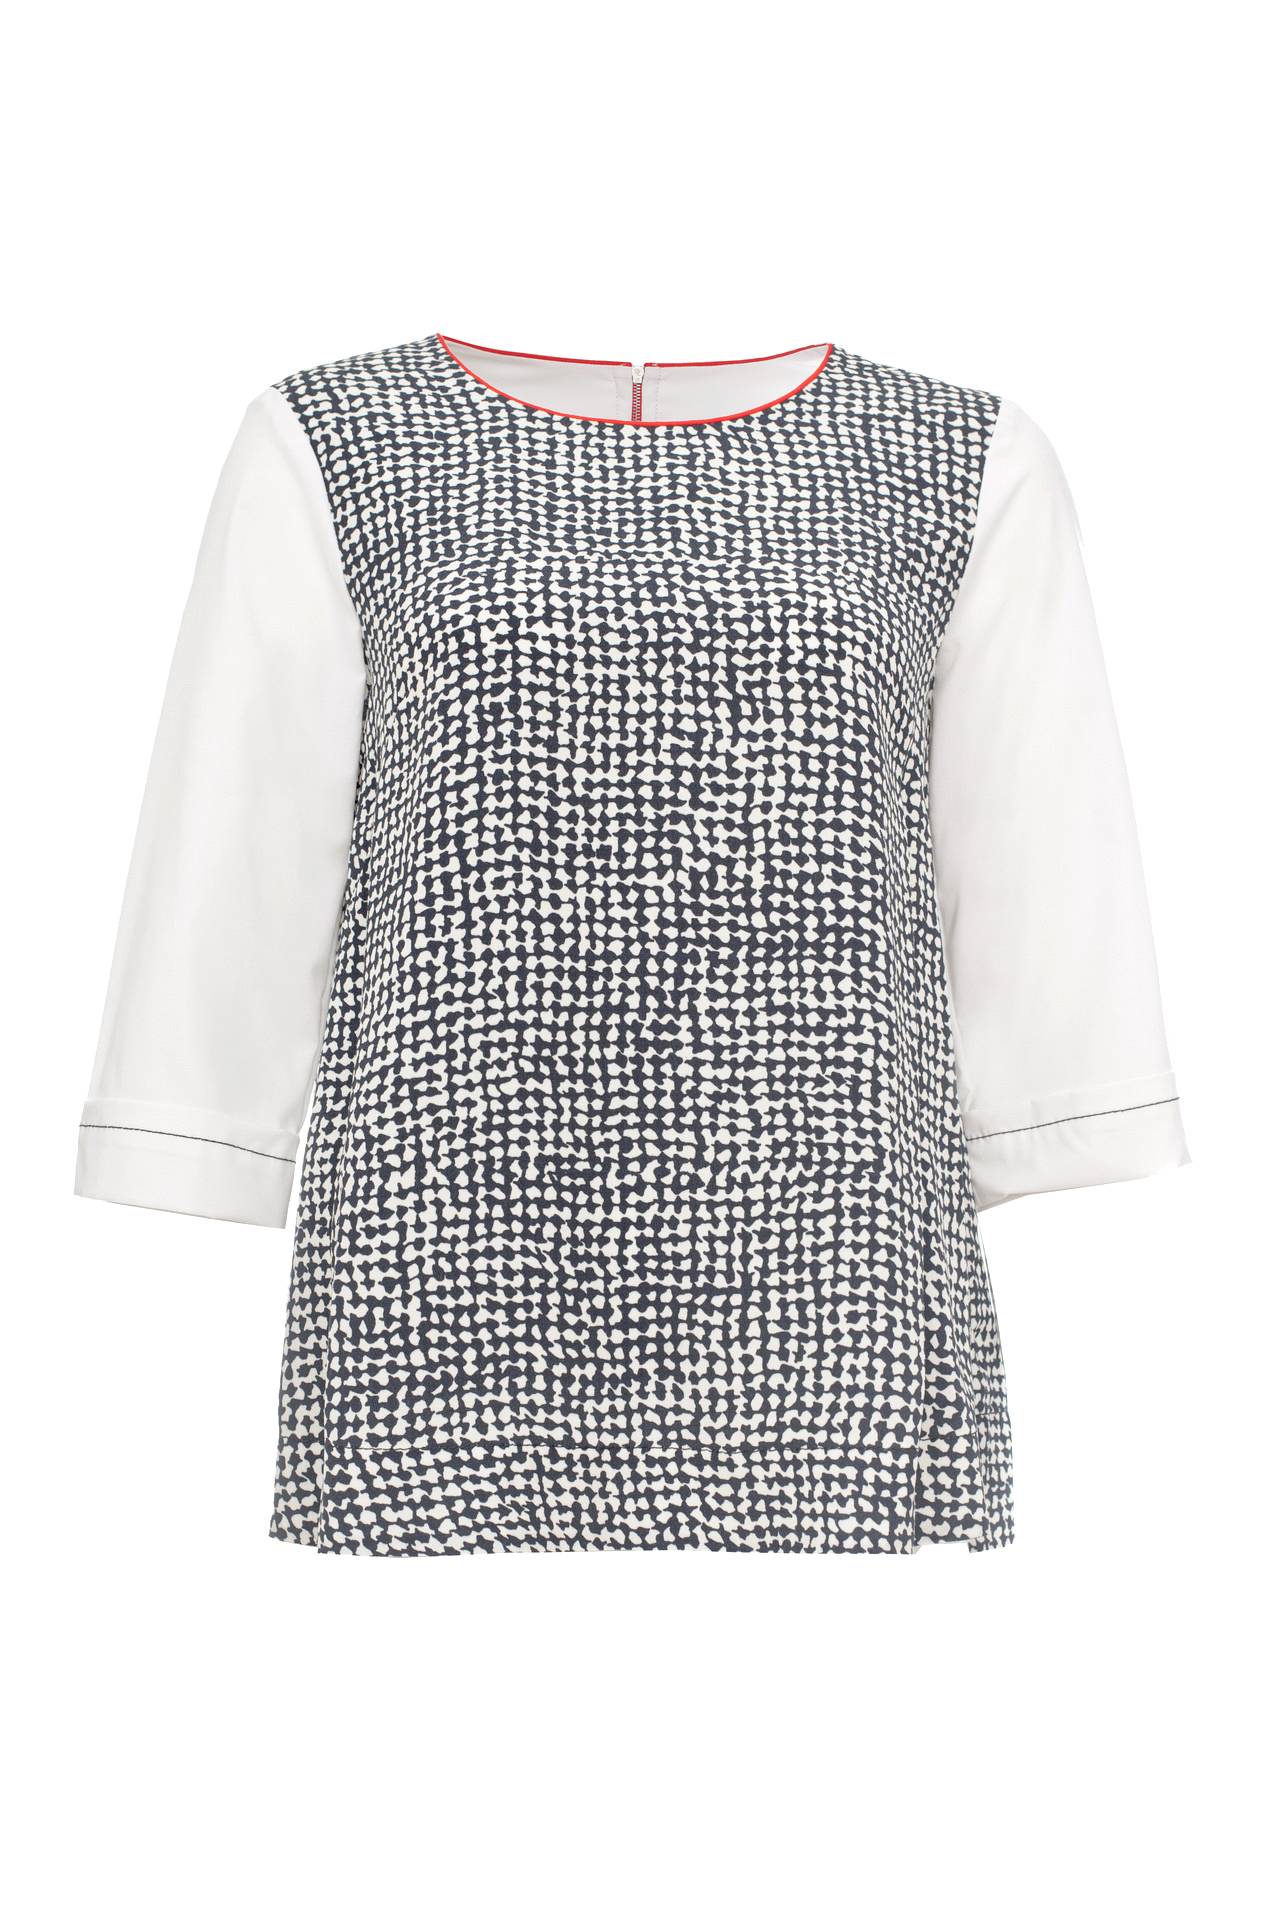 Одежда женская Блузка LIVIANA CONTI (F6EU25/16.2). Купить за 8950 руб.